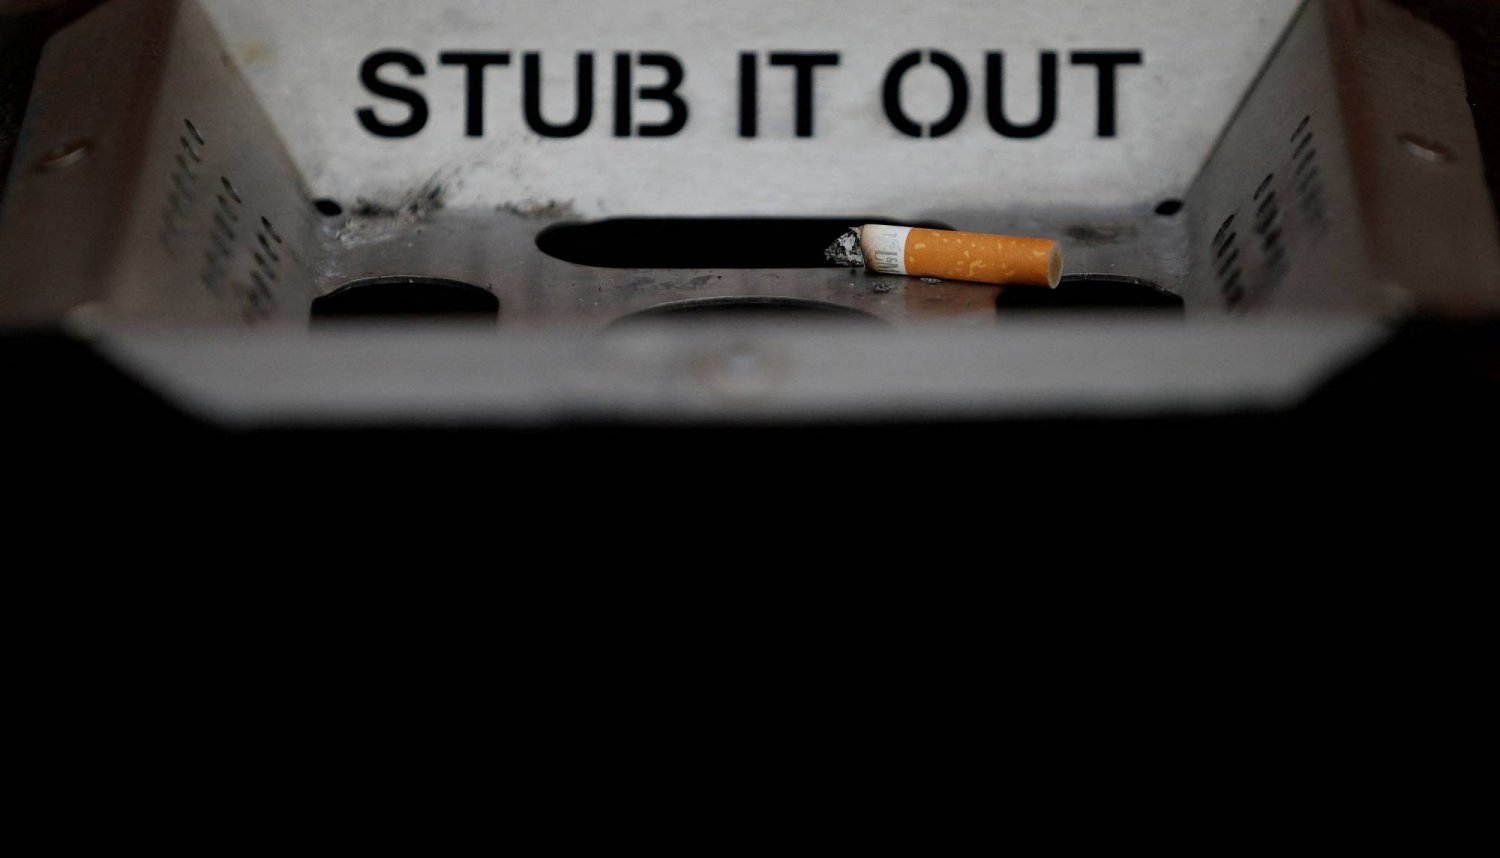 الإقلاع عن التدخين أهم خطوة يمكن اتخاذها للحد من مخاطر أمراض الرئة والقلب (رويترز)